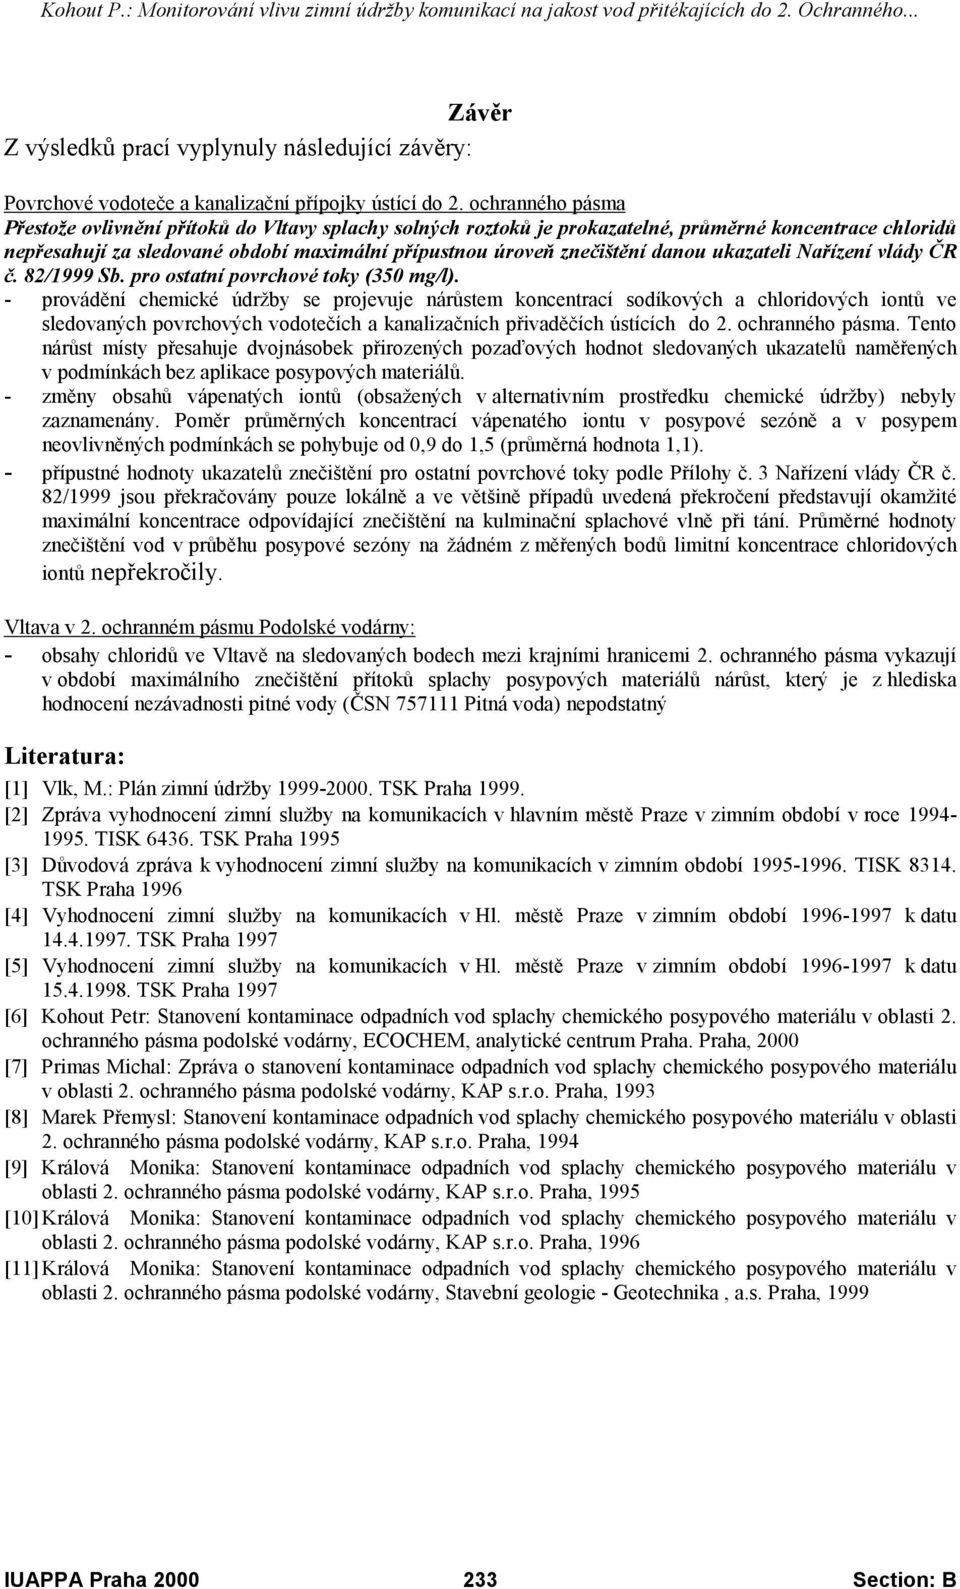 danou ukazateli Nařízení vlády ČR č. 82/ Sb. pro ostatní povrchové toky (350 mg/l).